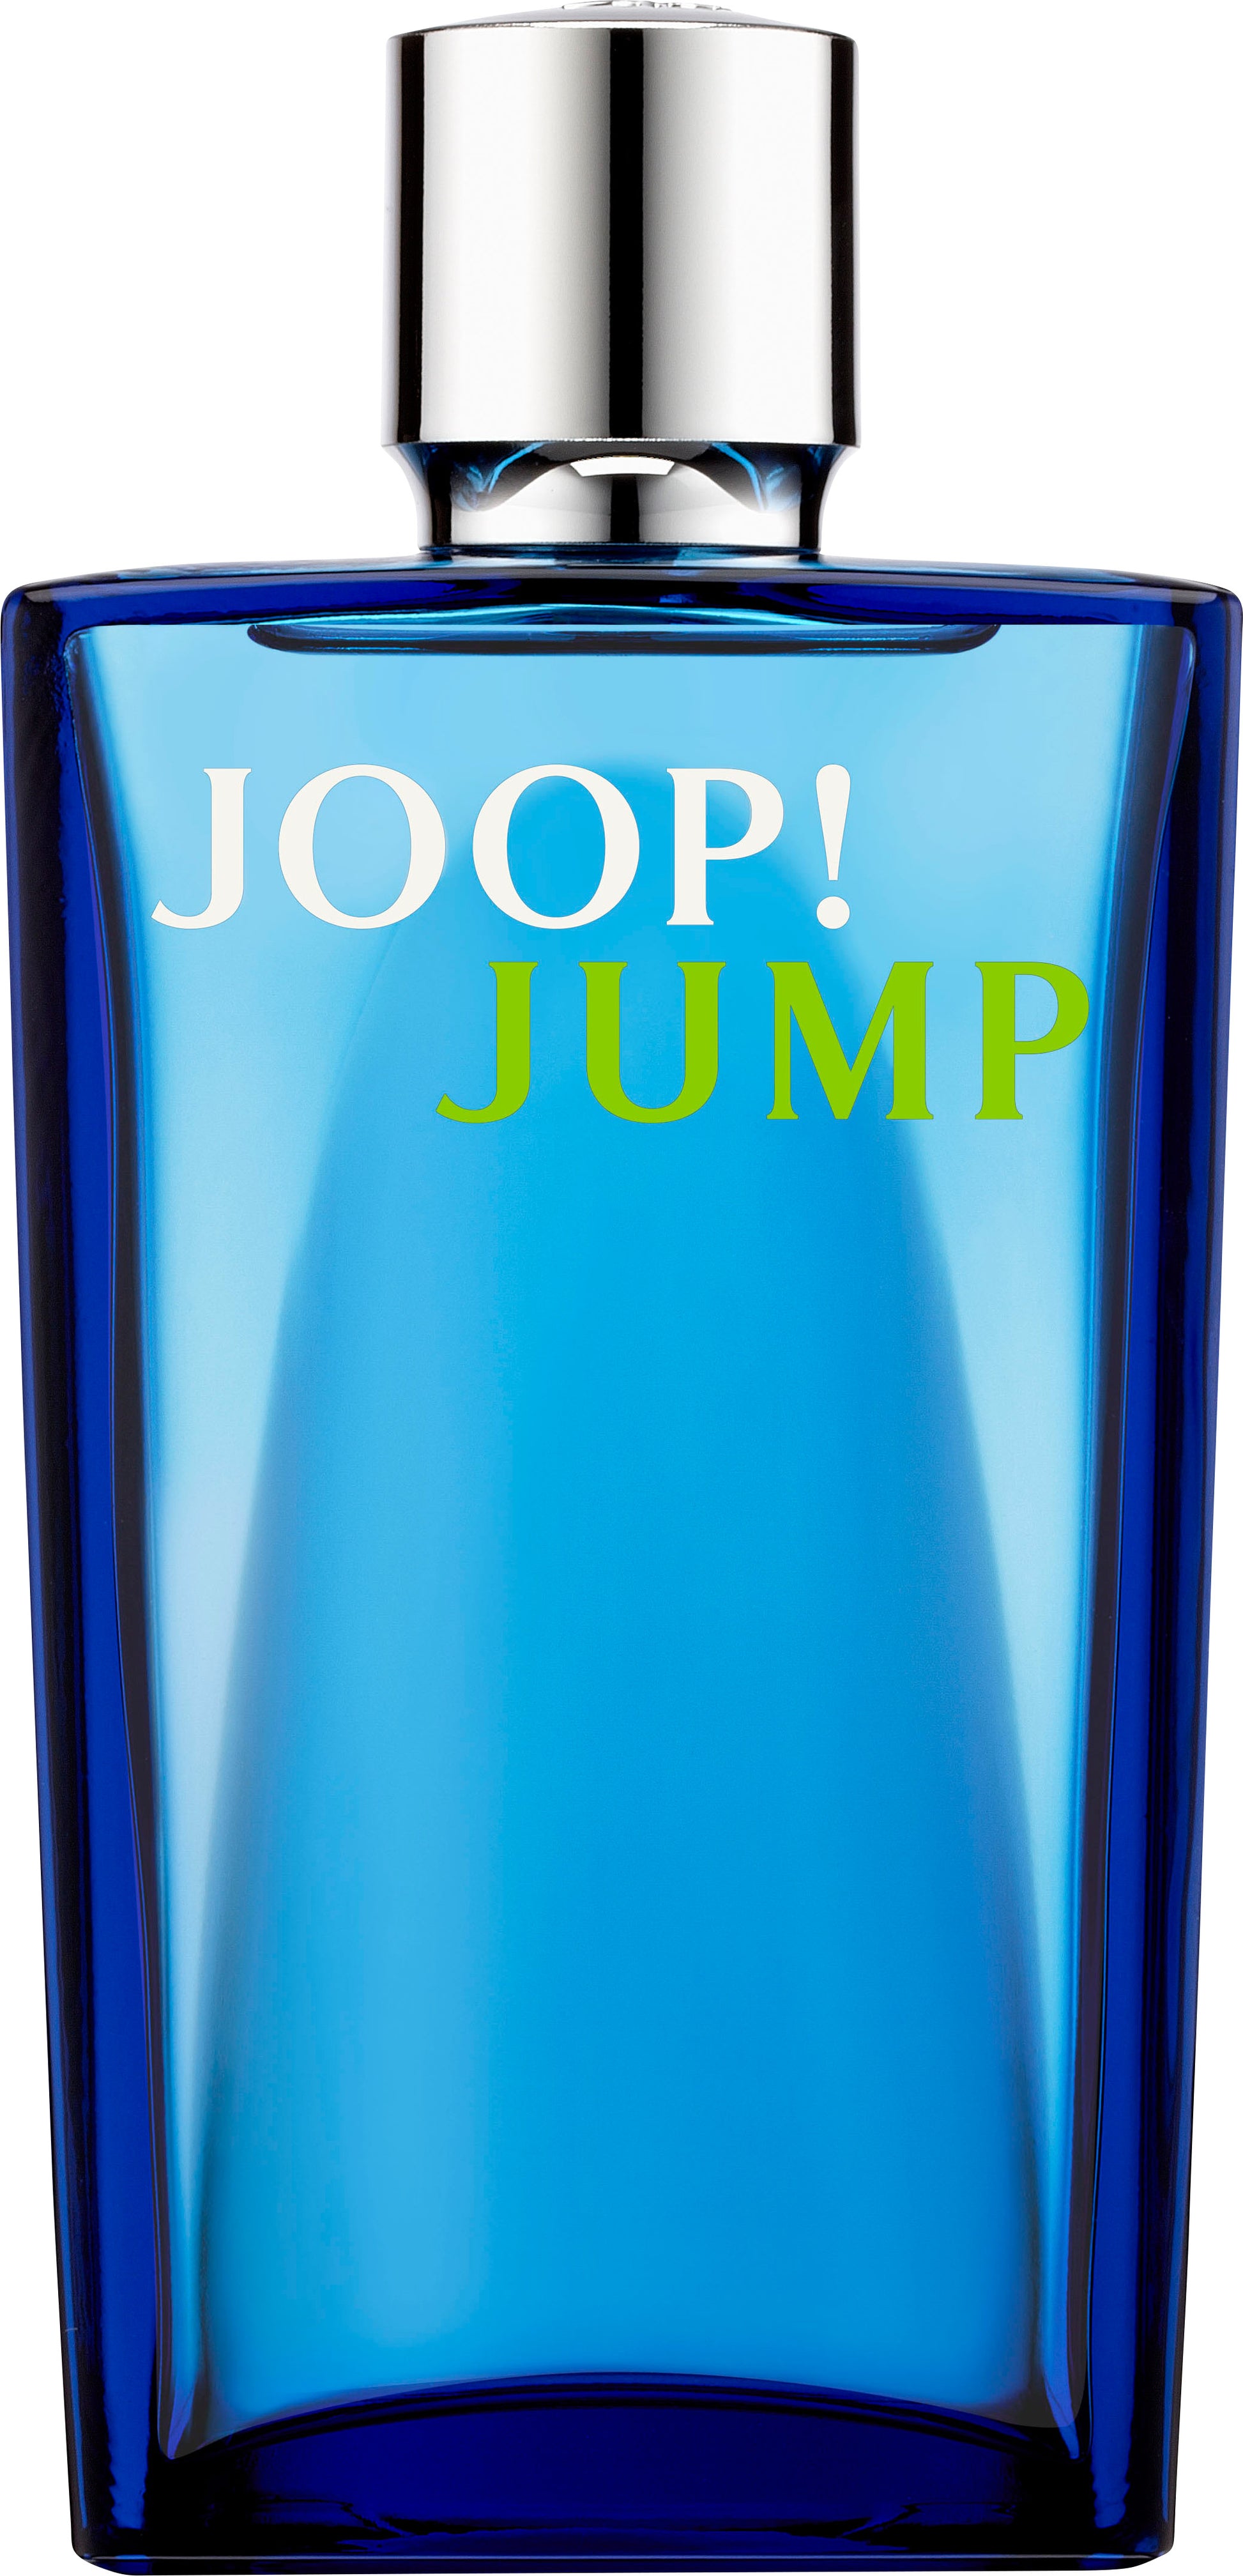 Joop! Jump EDT - Perfume Planet 